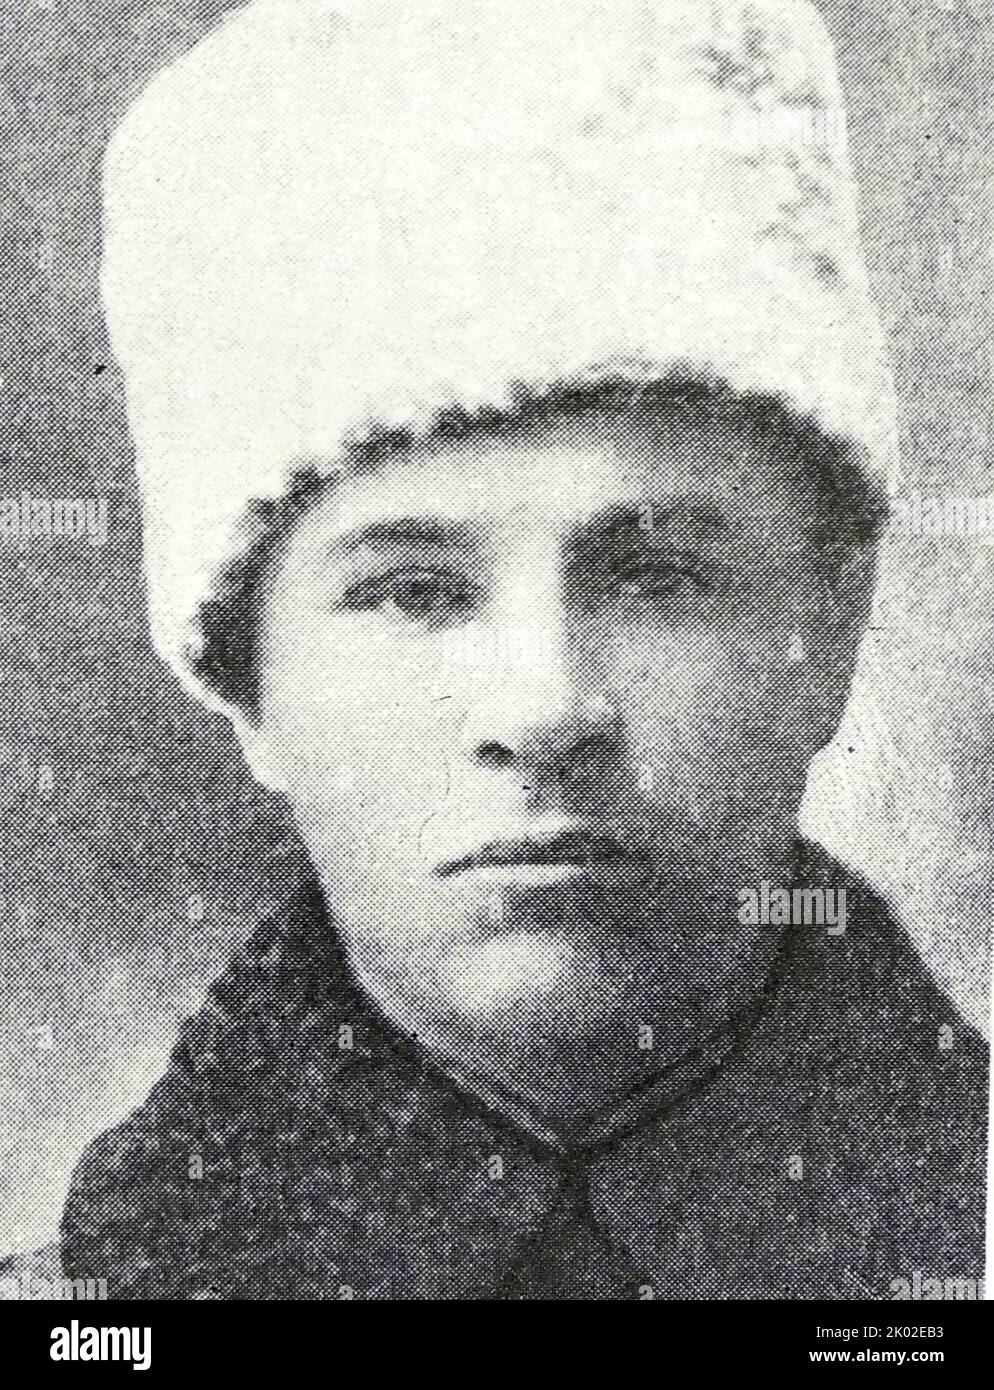 Iosif Rodionovich Apanasenko (1890 - 1943) comandante della divisione sovietica combatté nell'esercito imperiale russo nella prima guerra mondiale prima di passare ai bolscevichi nella successiva guerra civile. Comandò le forze sia nell'Asia centrale che nell'Estremo Oriente russo. Nel giugno 1943, I.R. Apanasenko, dopo numerose richieste di invio in fronte, fu nominato vice comandante del fronte di Voronezh. Visitò le unità in prima linea e le guidò durante i combattimenti. Fu ucciso da uno sciopero aereo durante la controffensiva sovietica a Kursk. Foto Stock